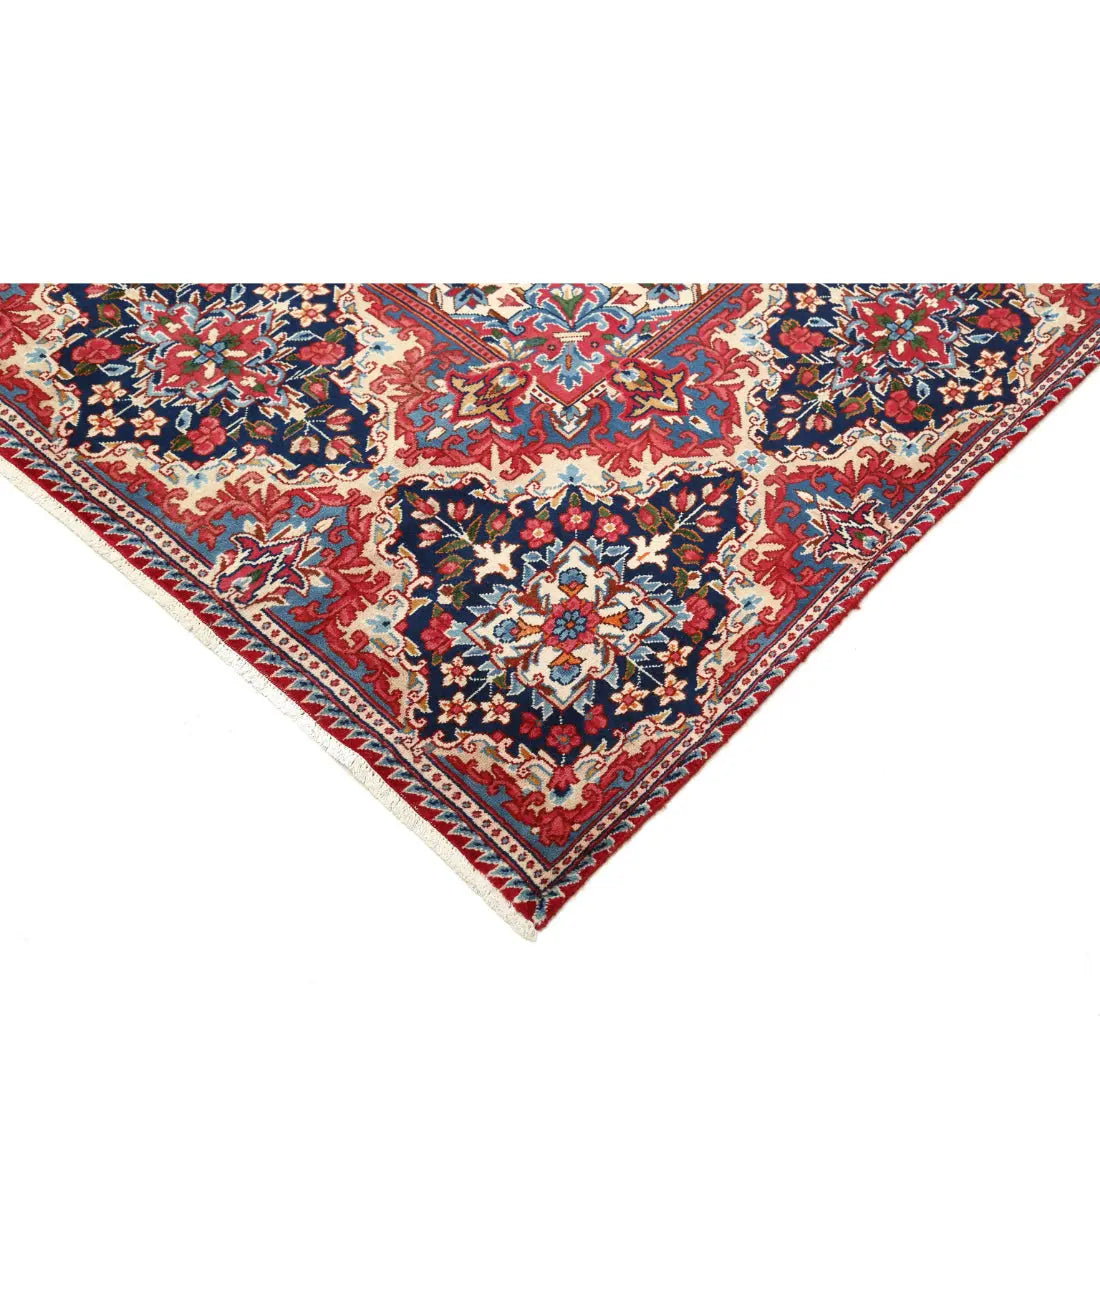 Hand Knotted Persian Kerman Wool Rug - 9'9'' x 12'9'' - Arteverk Rugs Area rug